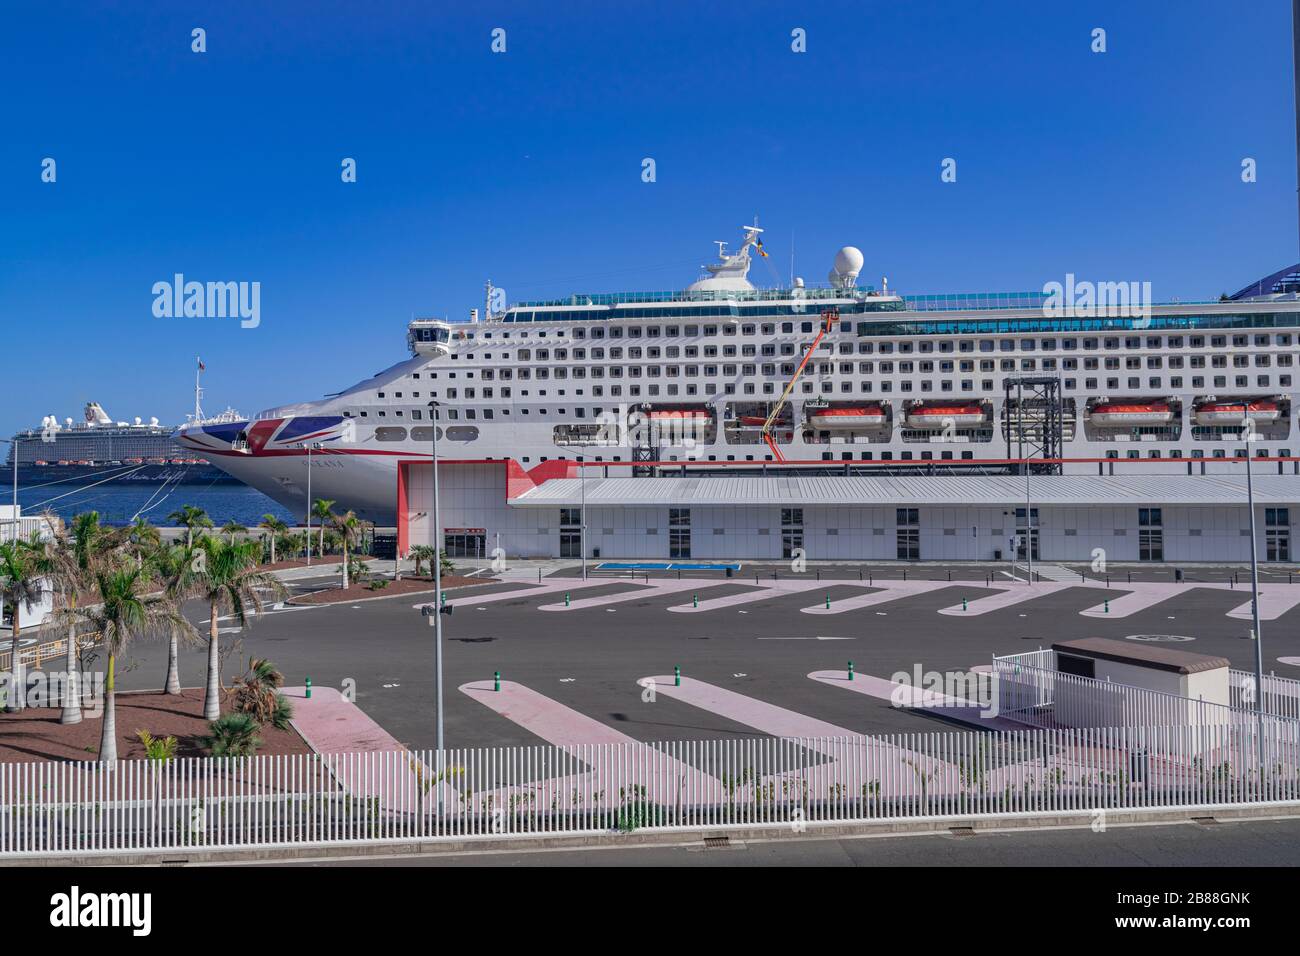 Tenera-Spanien; 27. Dezember 2019: Kreuzfahrtschiff von Oceana im Hafen von Santa Cruz von Tenera, P&O Cruises, Kanarische Inseln, Spanien Stockfoto